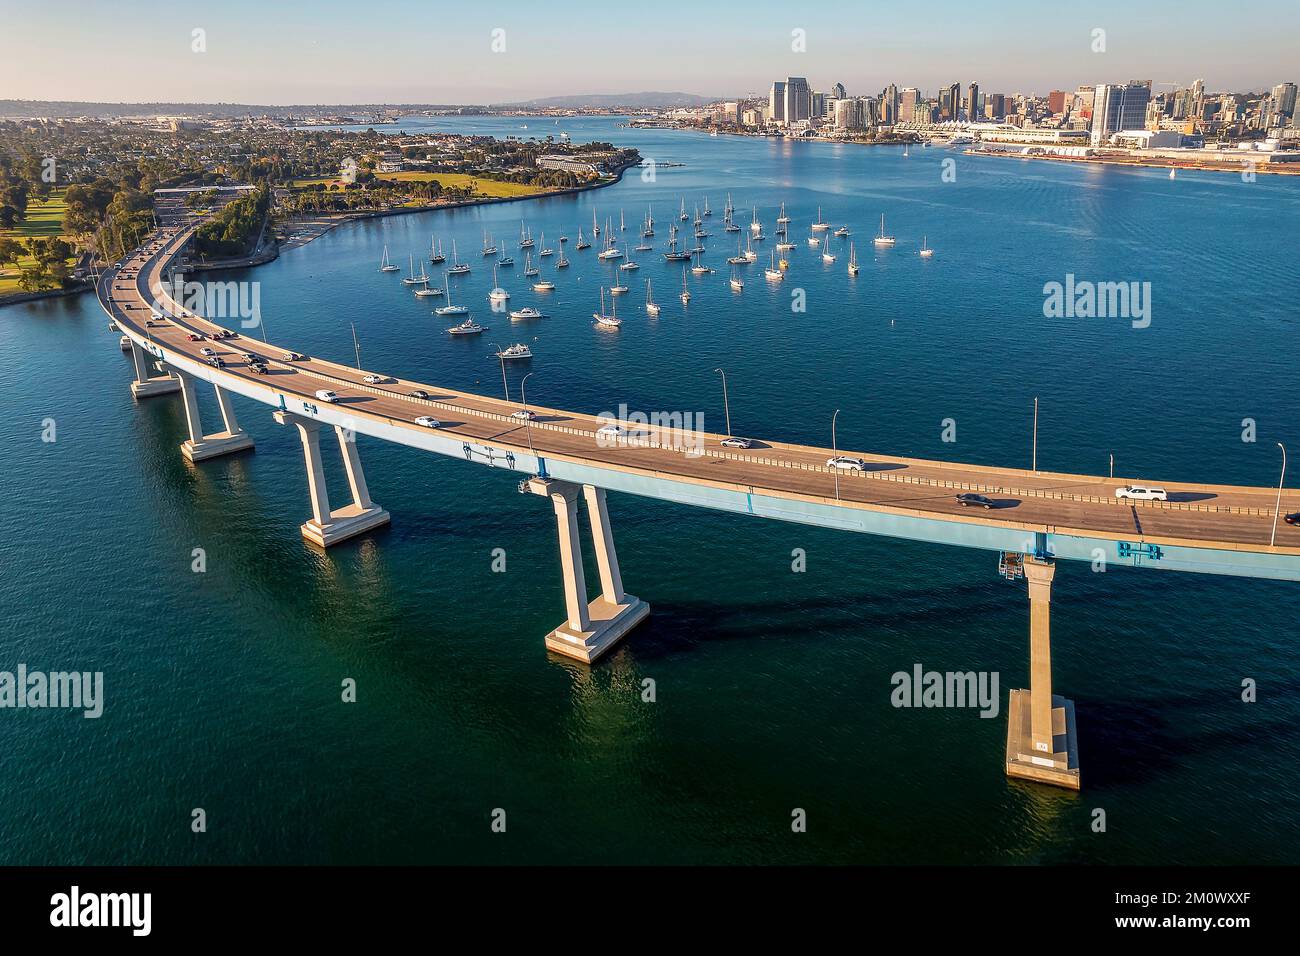 Vista aerea del Ponte Coronado nella baia di San Diego, nella California meridionale, in una calda giornata di sole, con barche nella baia e auto che attraversano il ponte Foto Stock